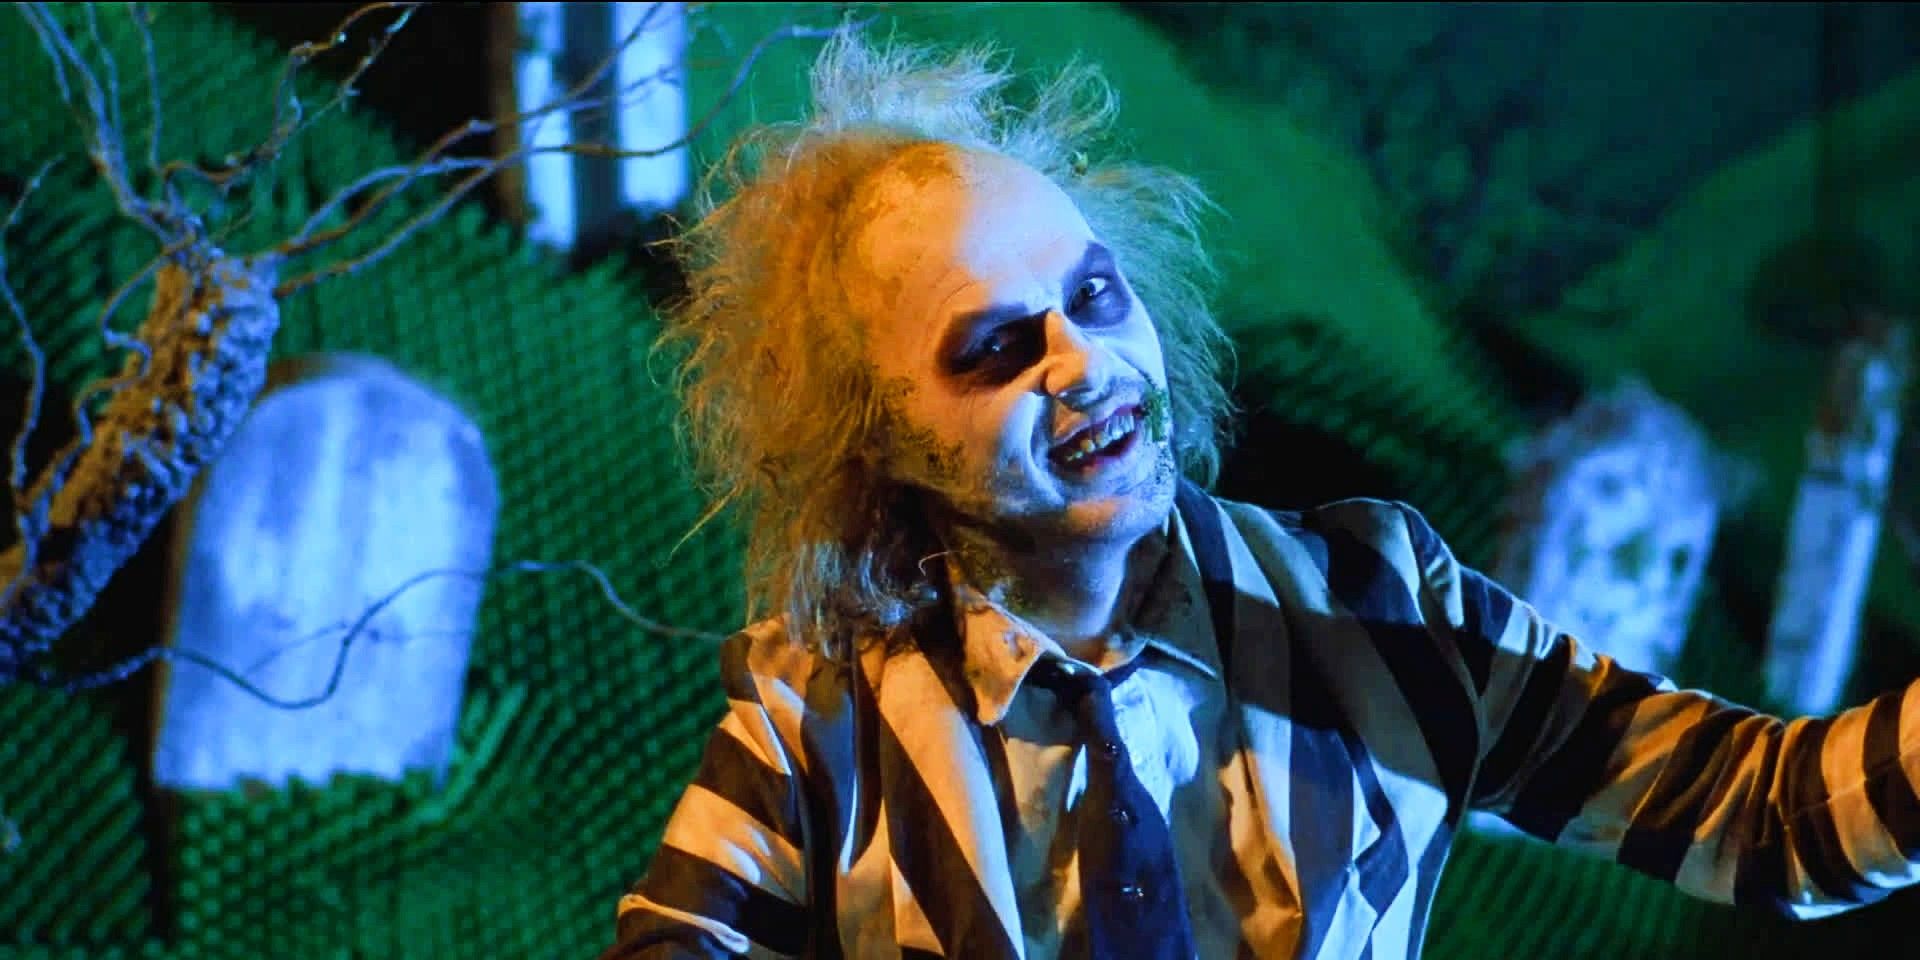 Michael Keaton posing in Beetlejuice